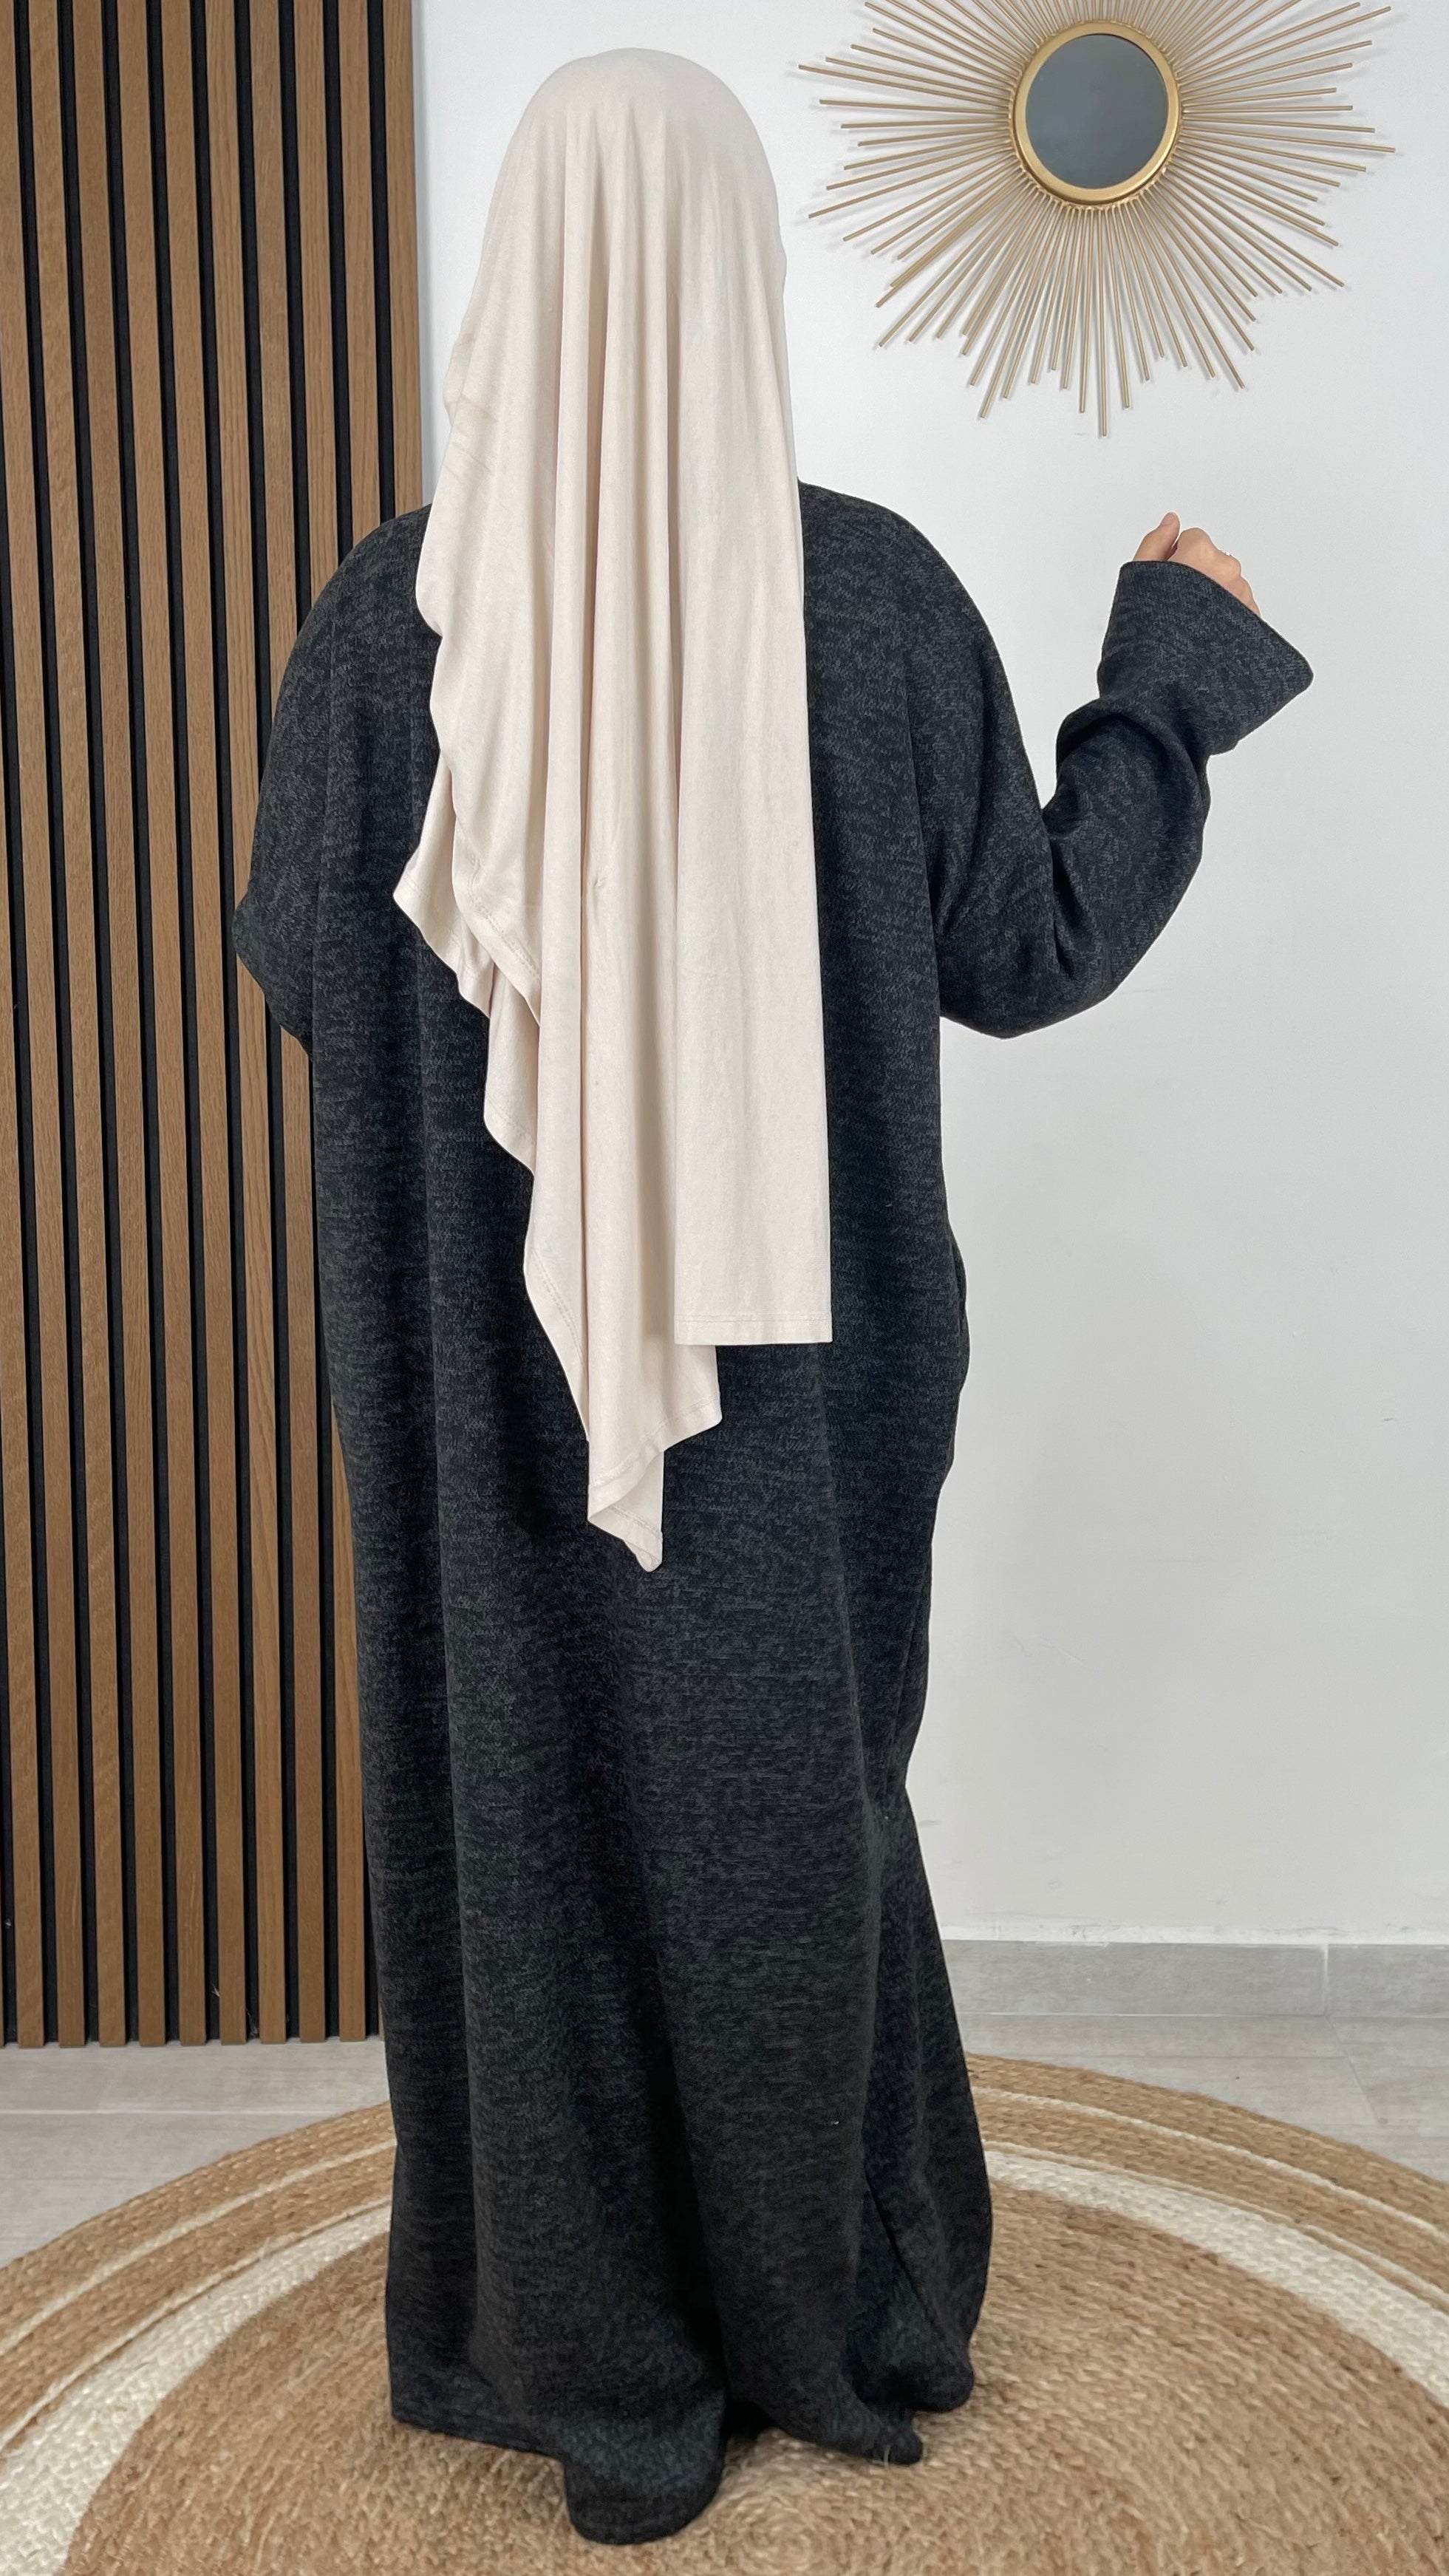 A Line Abaya- Hijab Paradise - Abaya calda - winter abaya - abaya per l'inverno - abaya lunga dritta- scarpe sportive - hijab - donna musulmana 